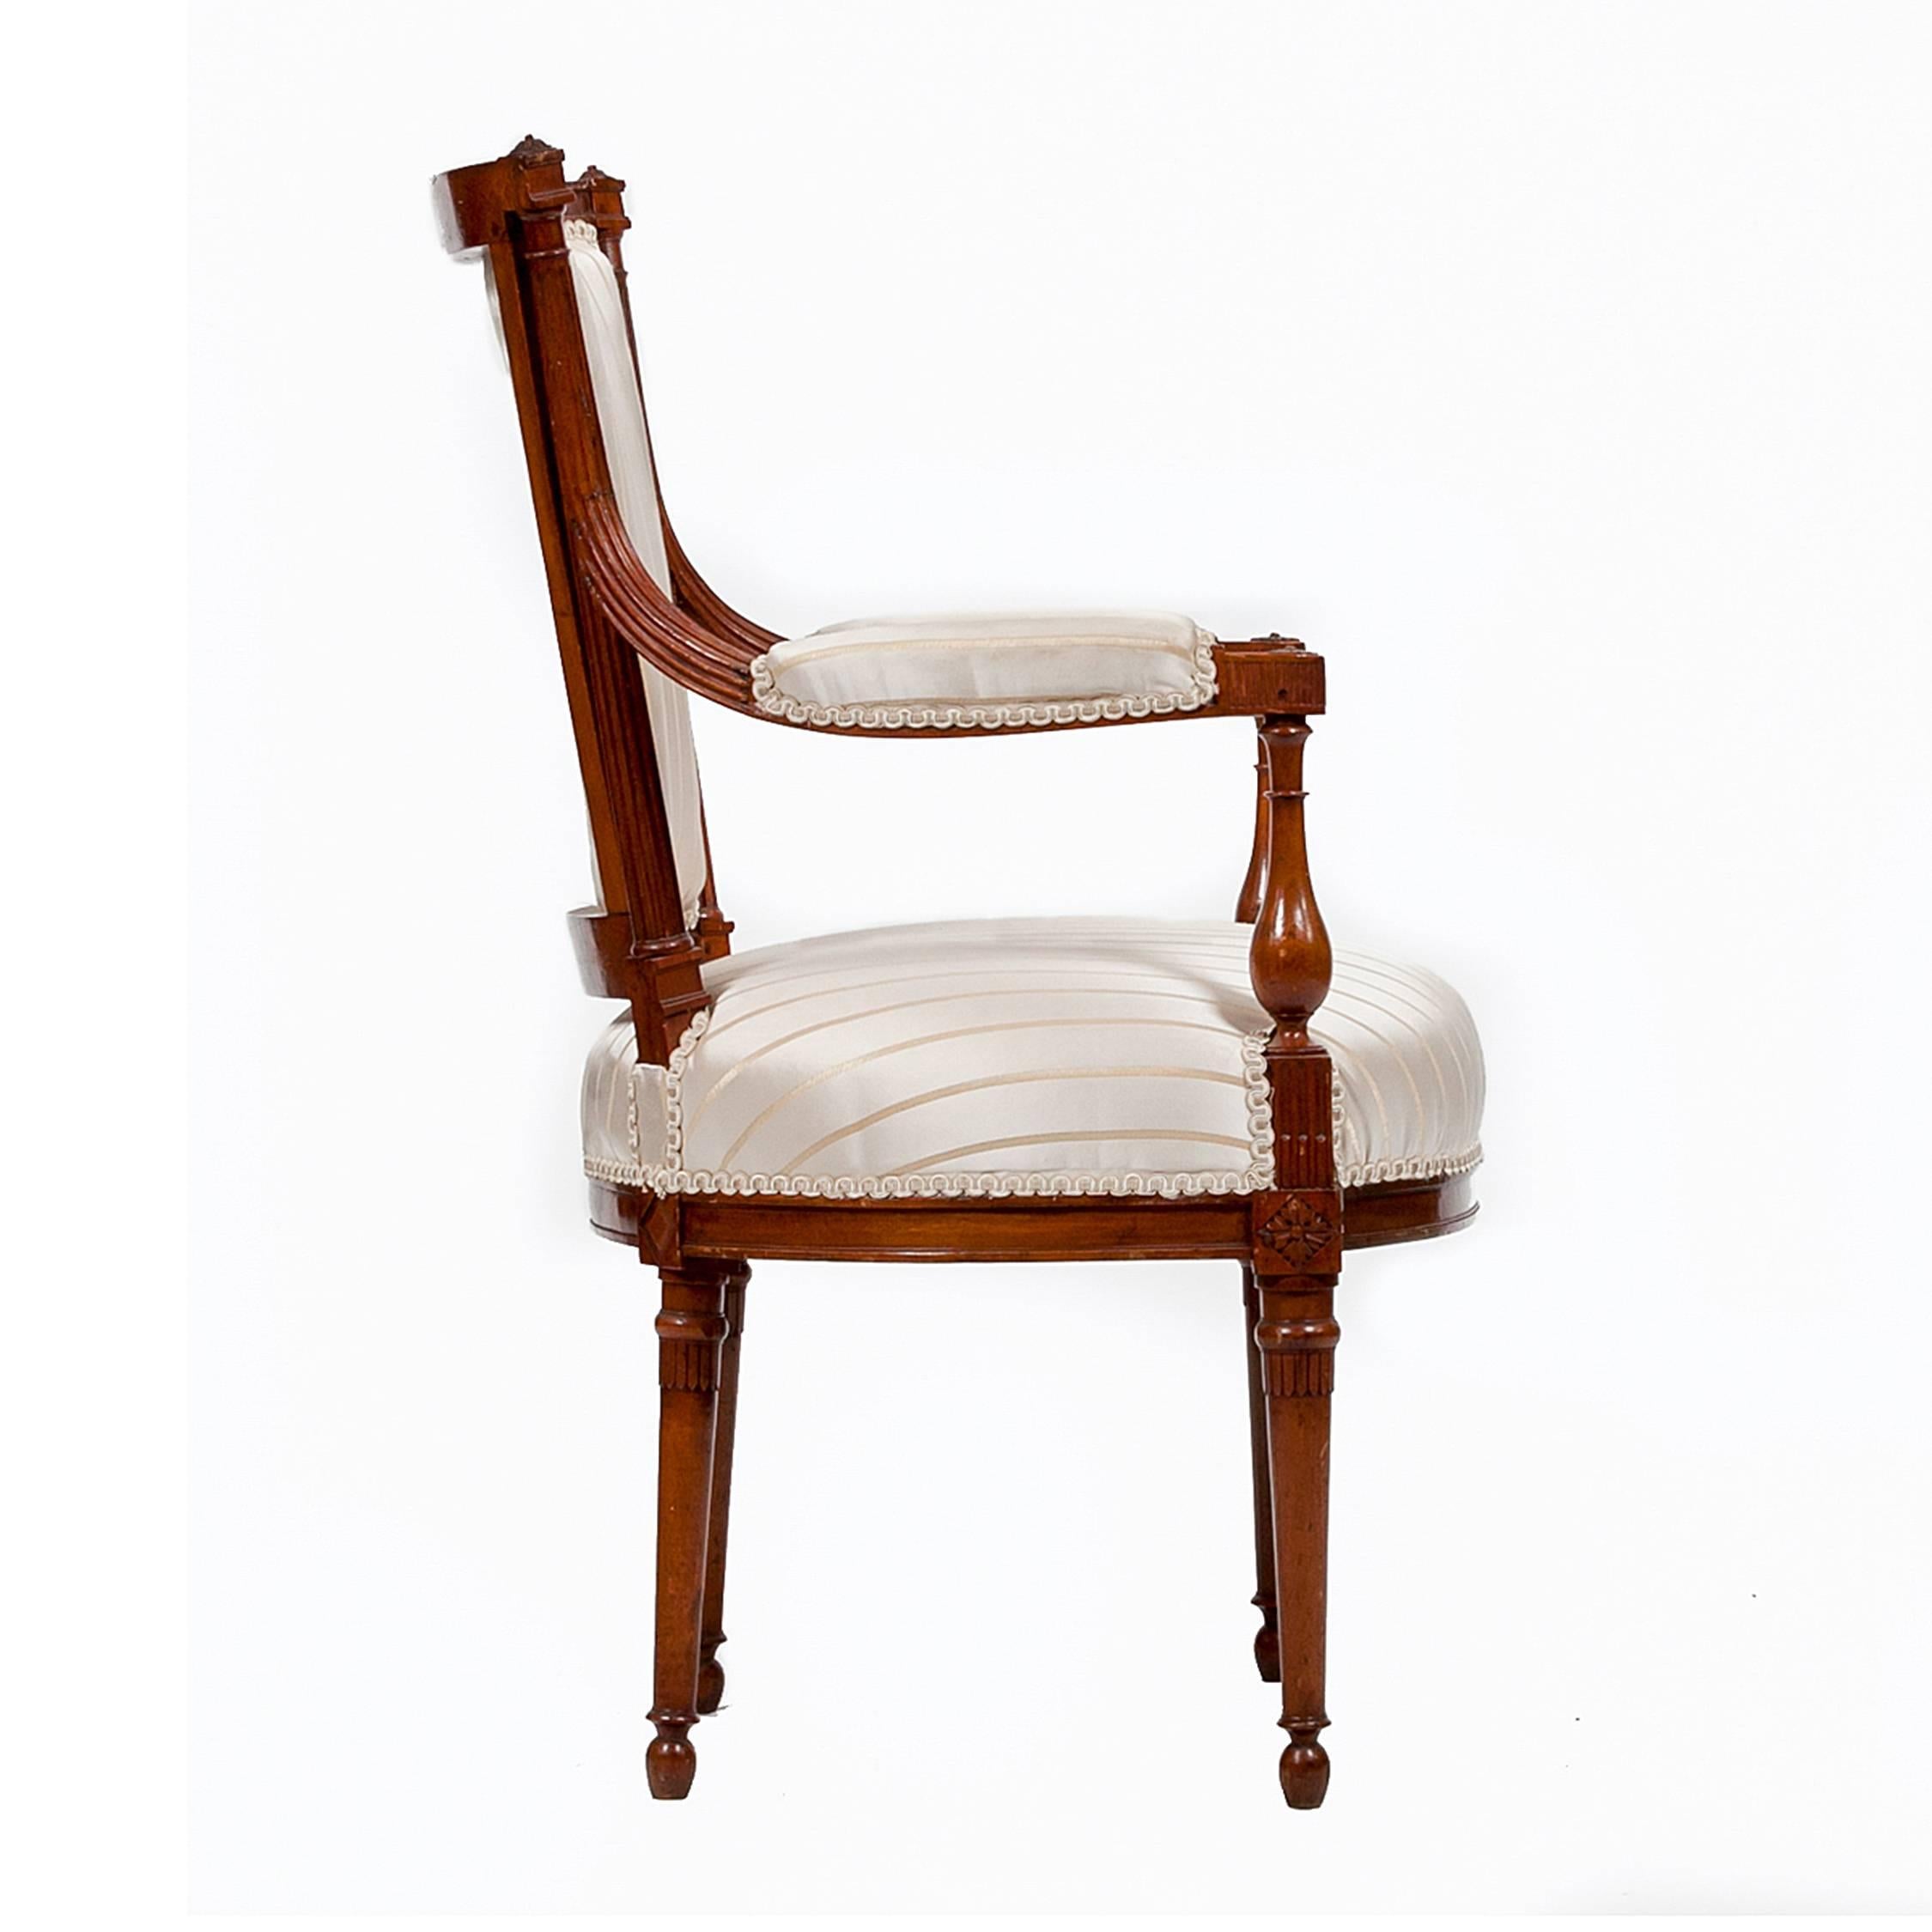 Diese zart proportionierten Fauteuil-Sessel aus dem 18. Jahrhundert sind ein Beispiel für den französischen Directoire-Stil. Sie haben eine tonnenförmige Rückenlehne und Rosetten auf kannelierten Holmen, die sich in gepolsterte Armlehnen mit